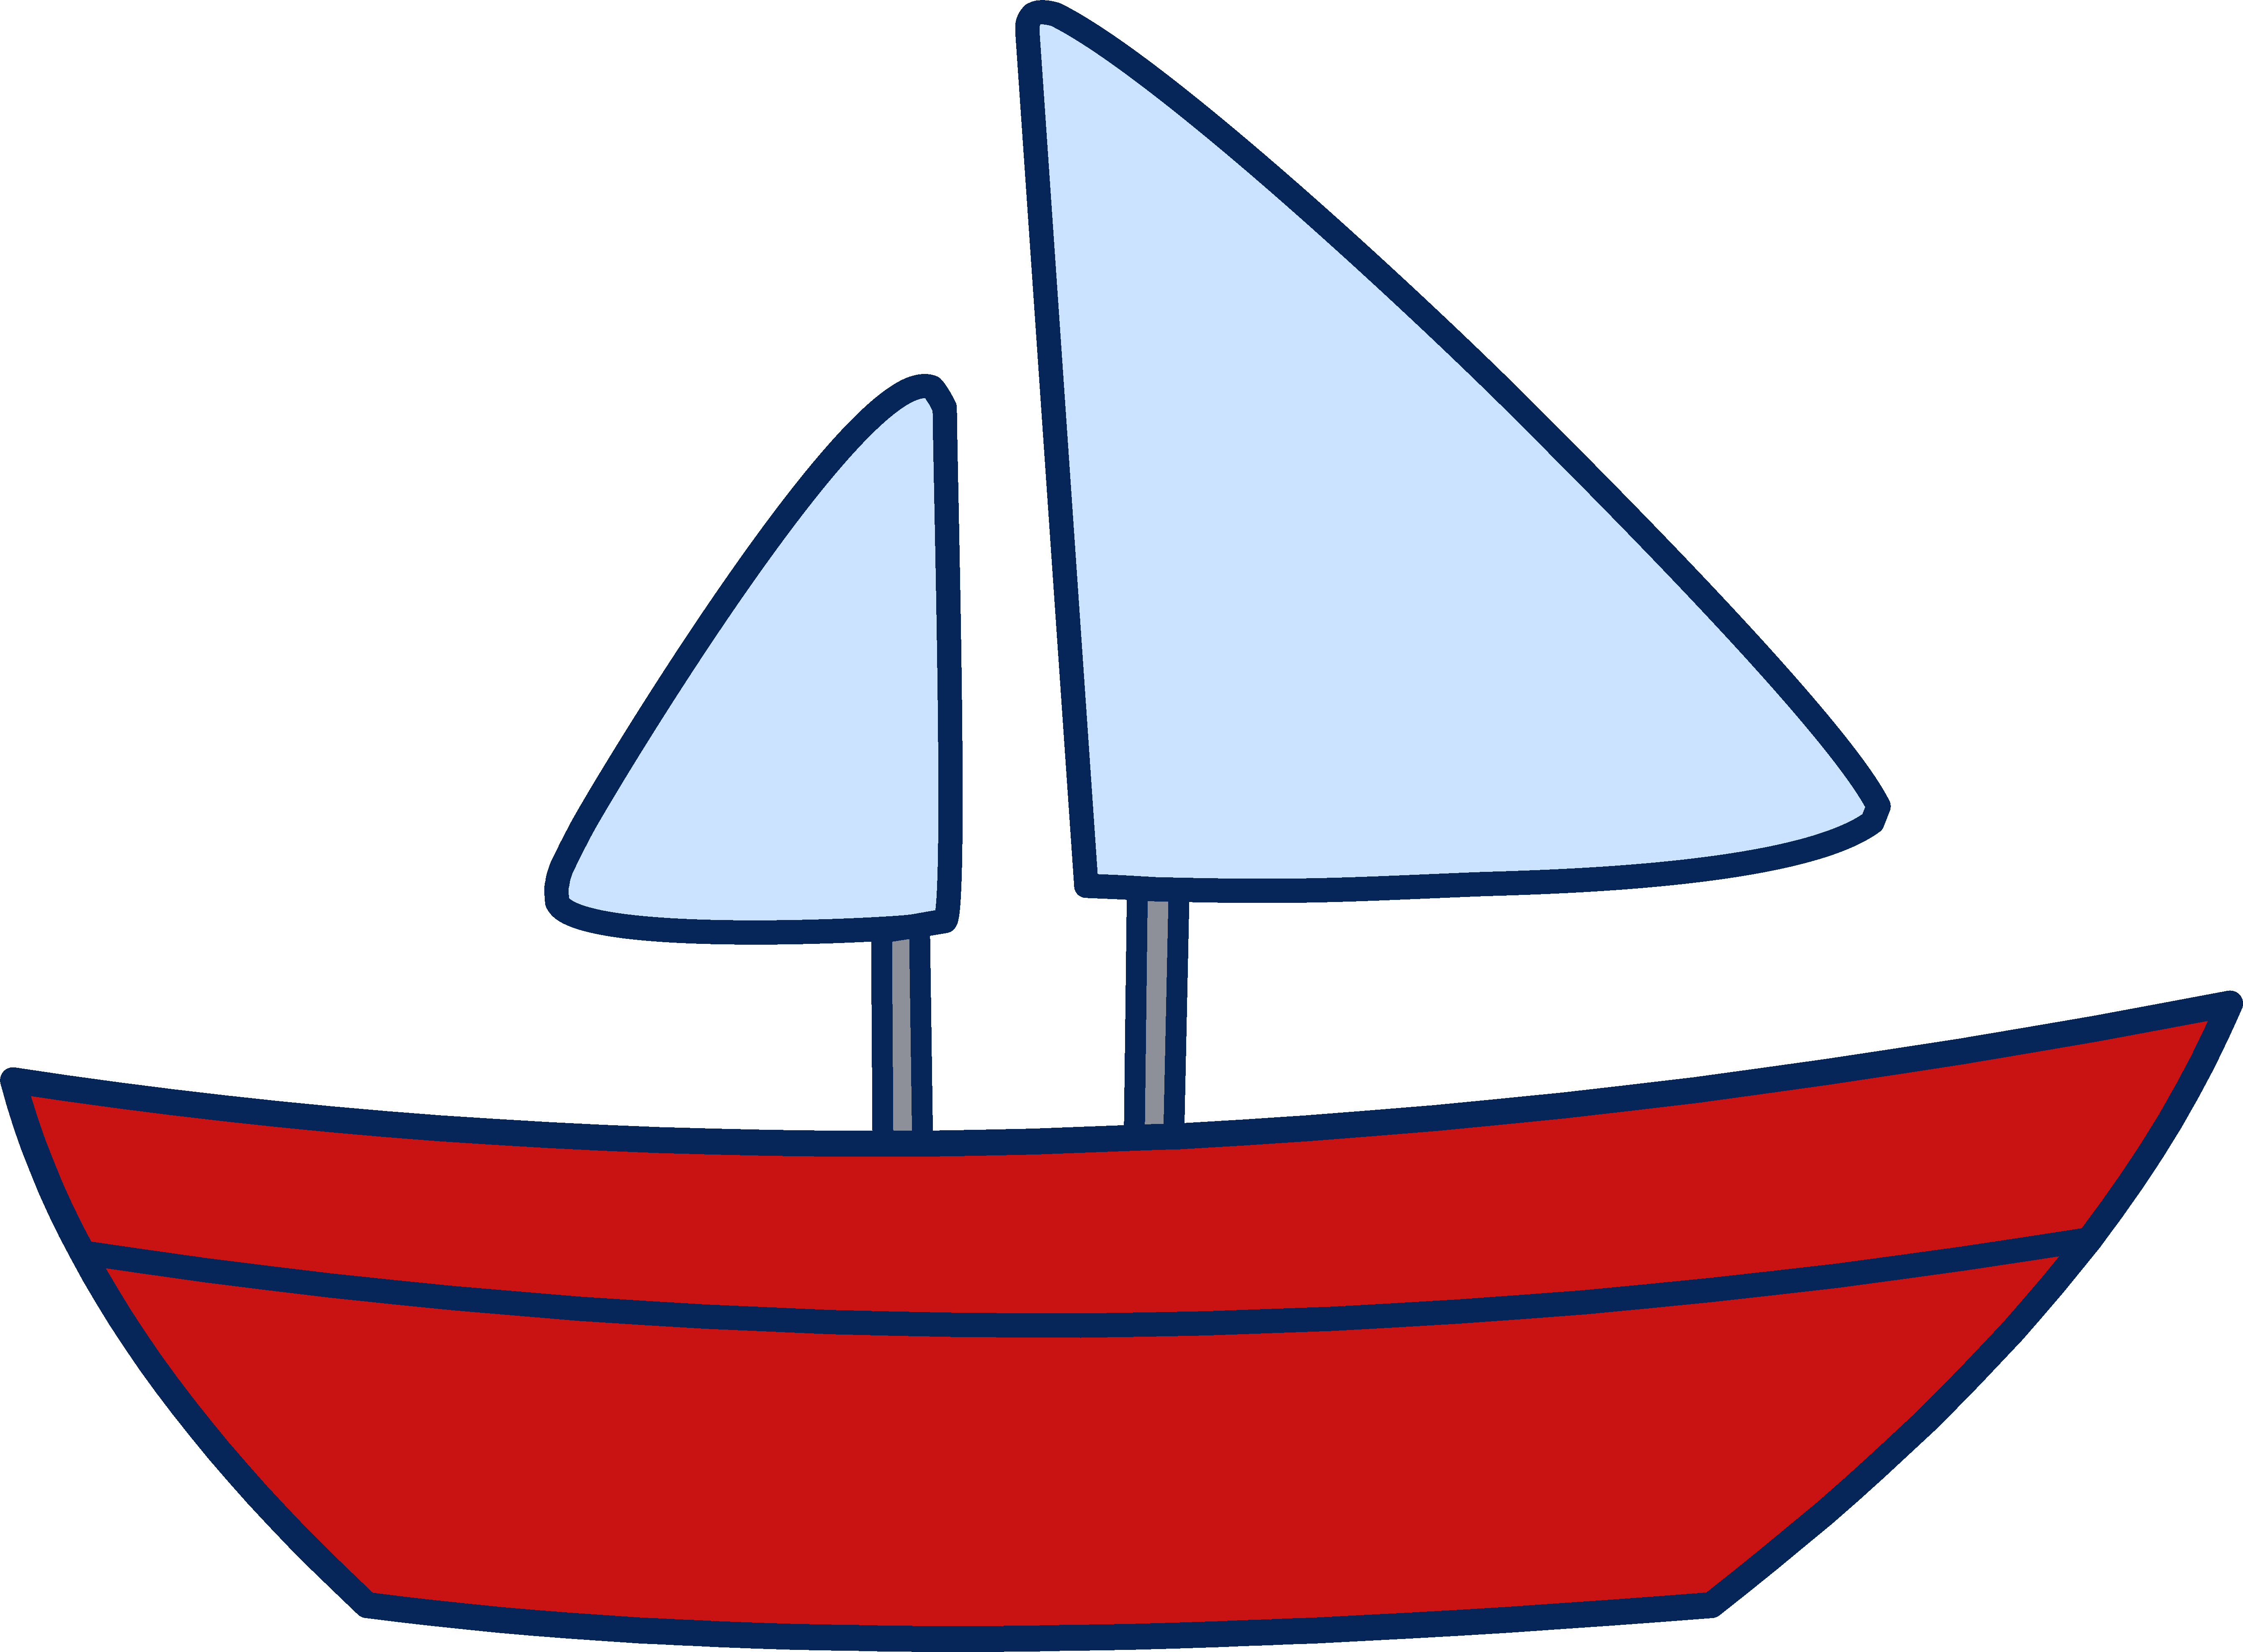 Sailboat clip art panda. Boats clipart schooner